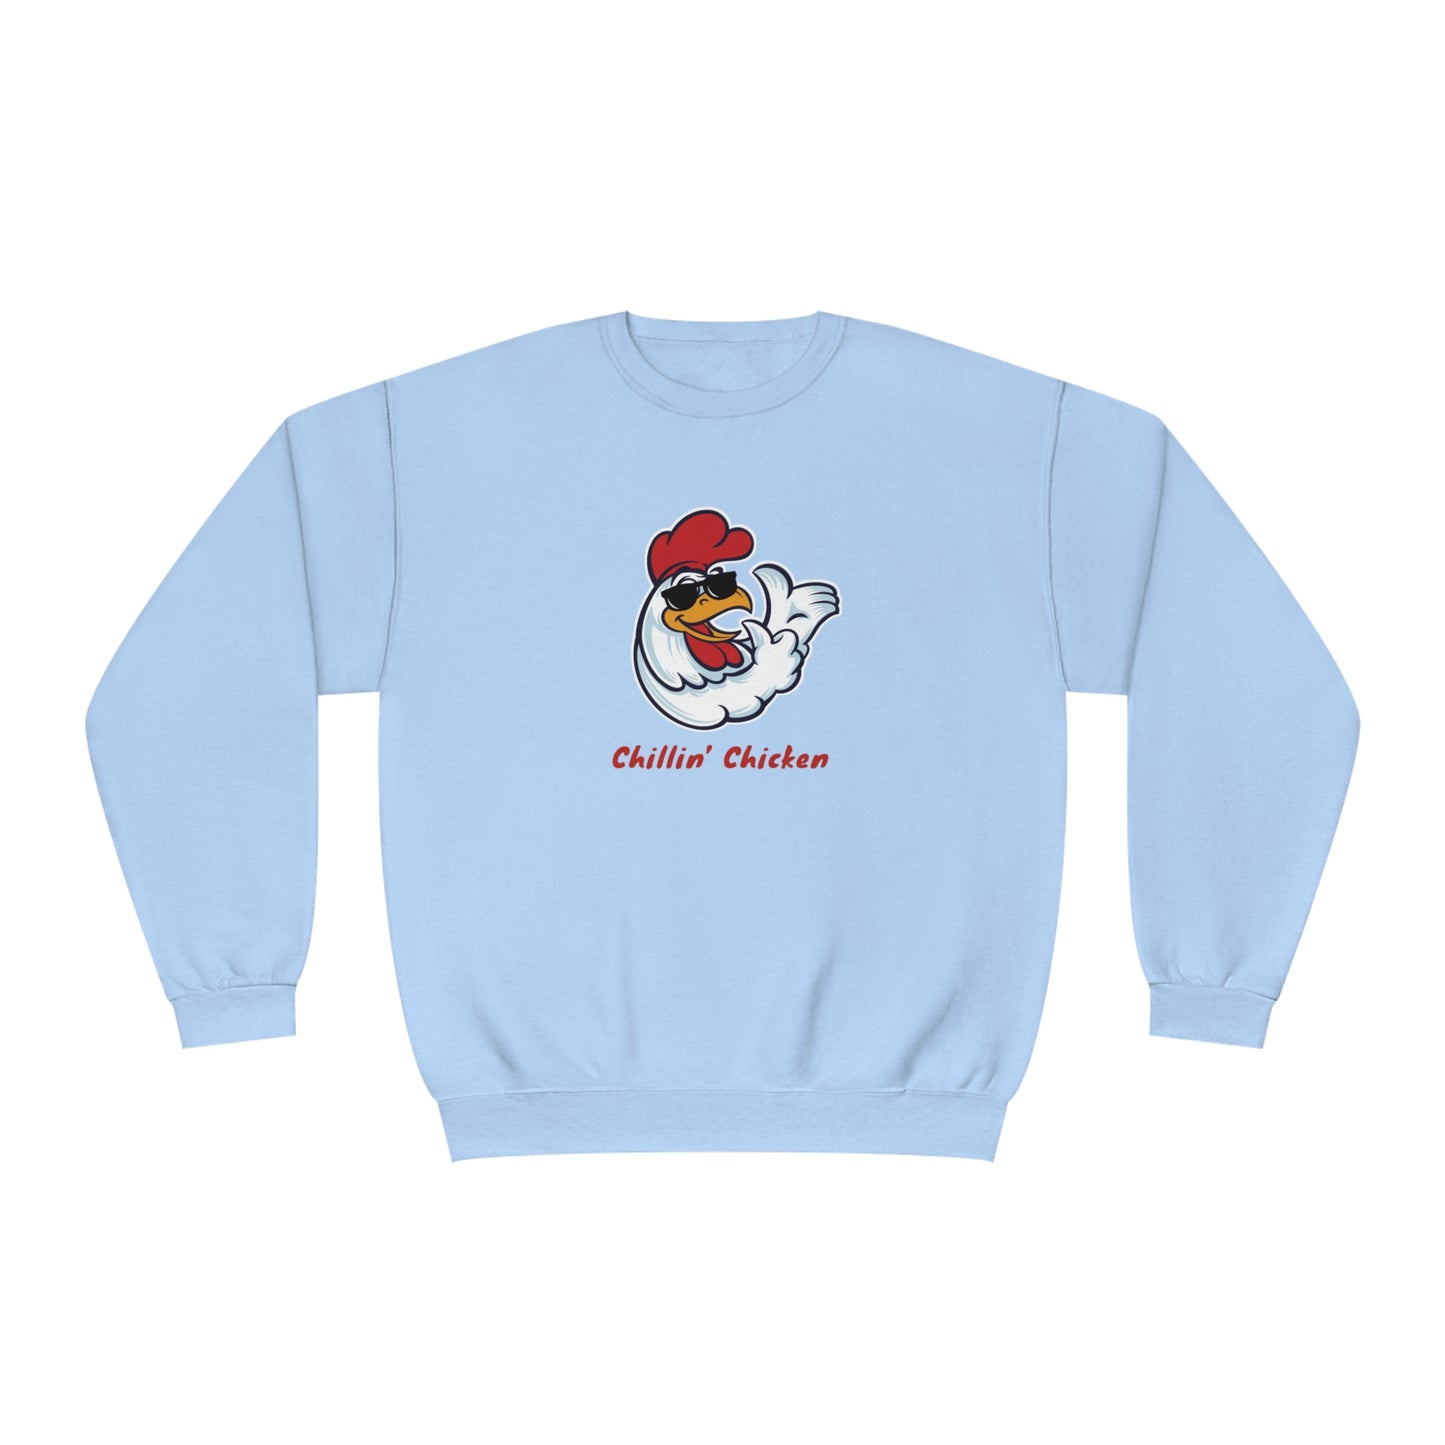 Chillin' Chicken. Unisex NuBlend® Crewneck Sweatshirt